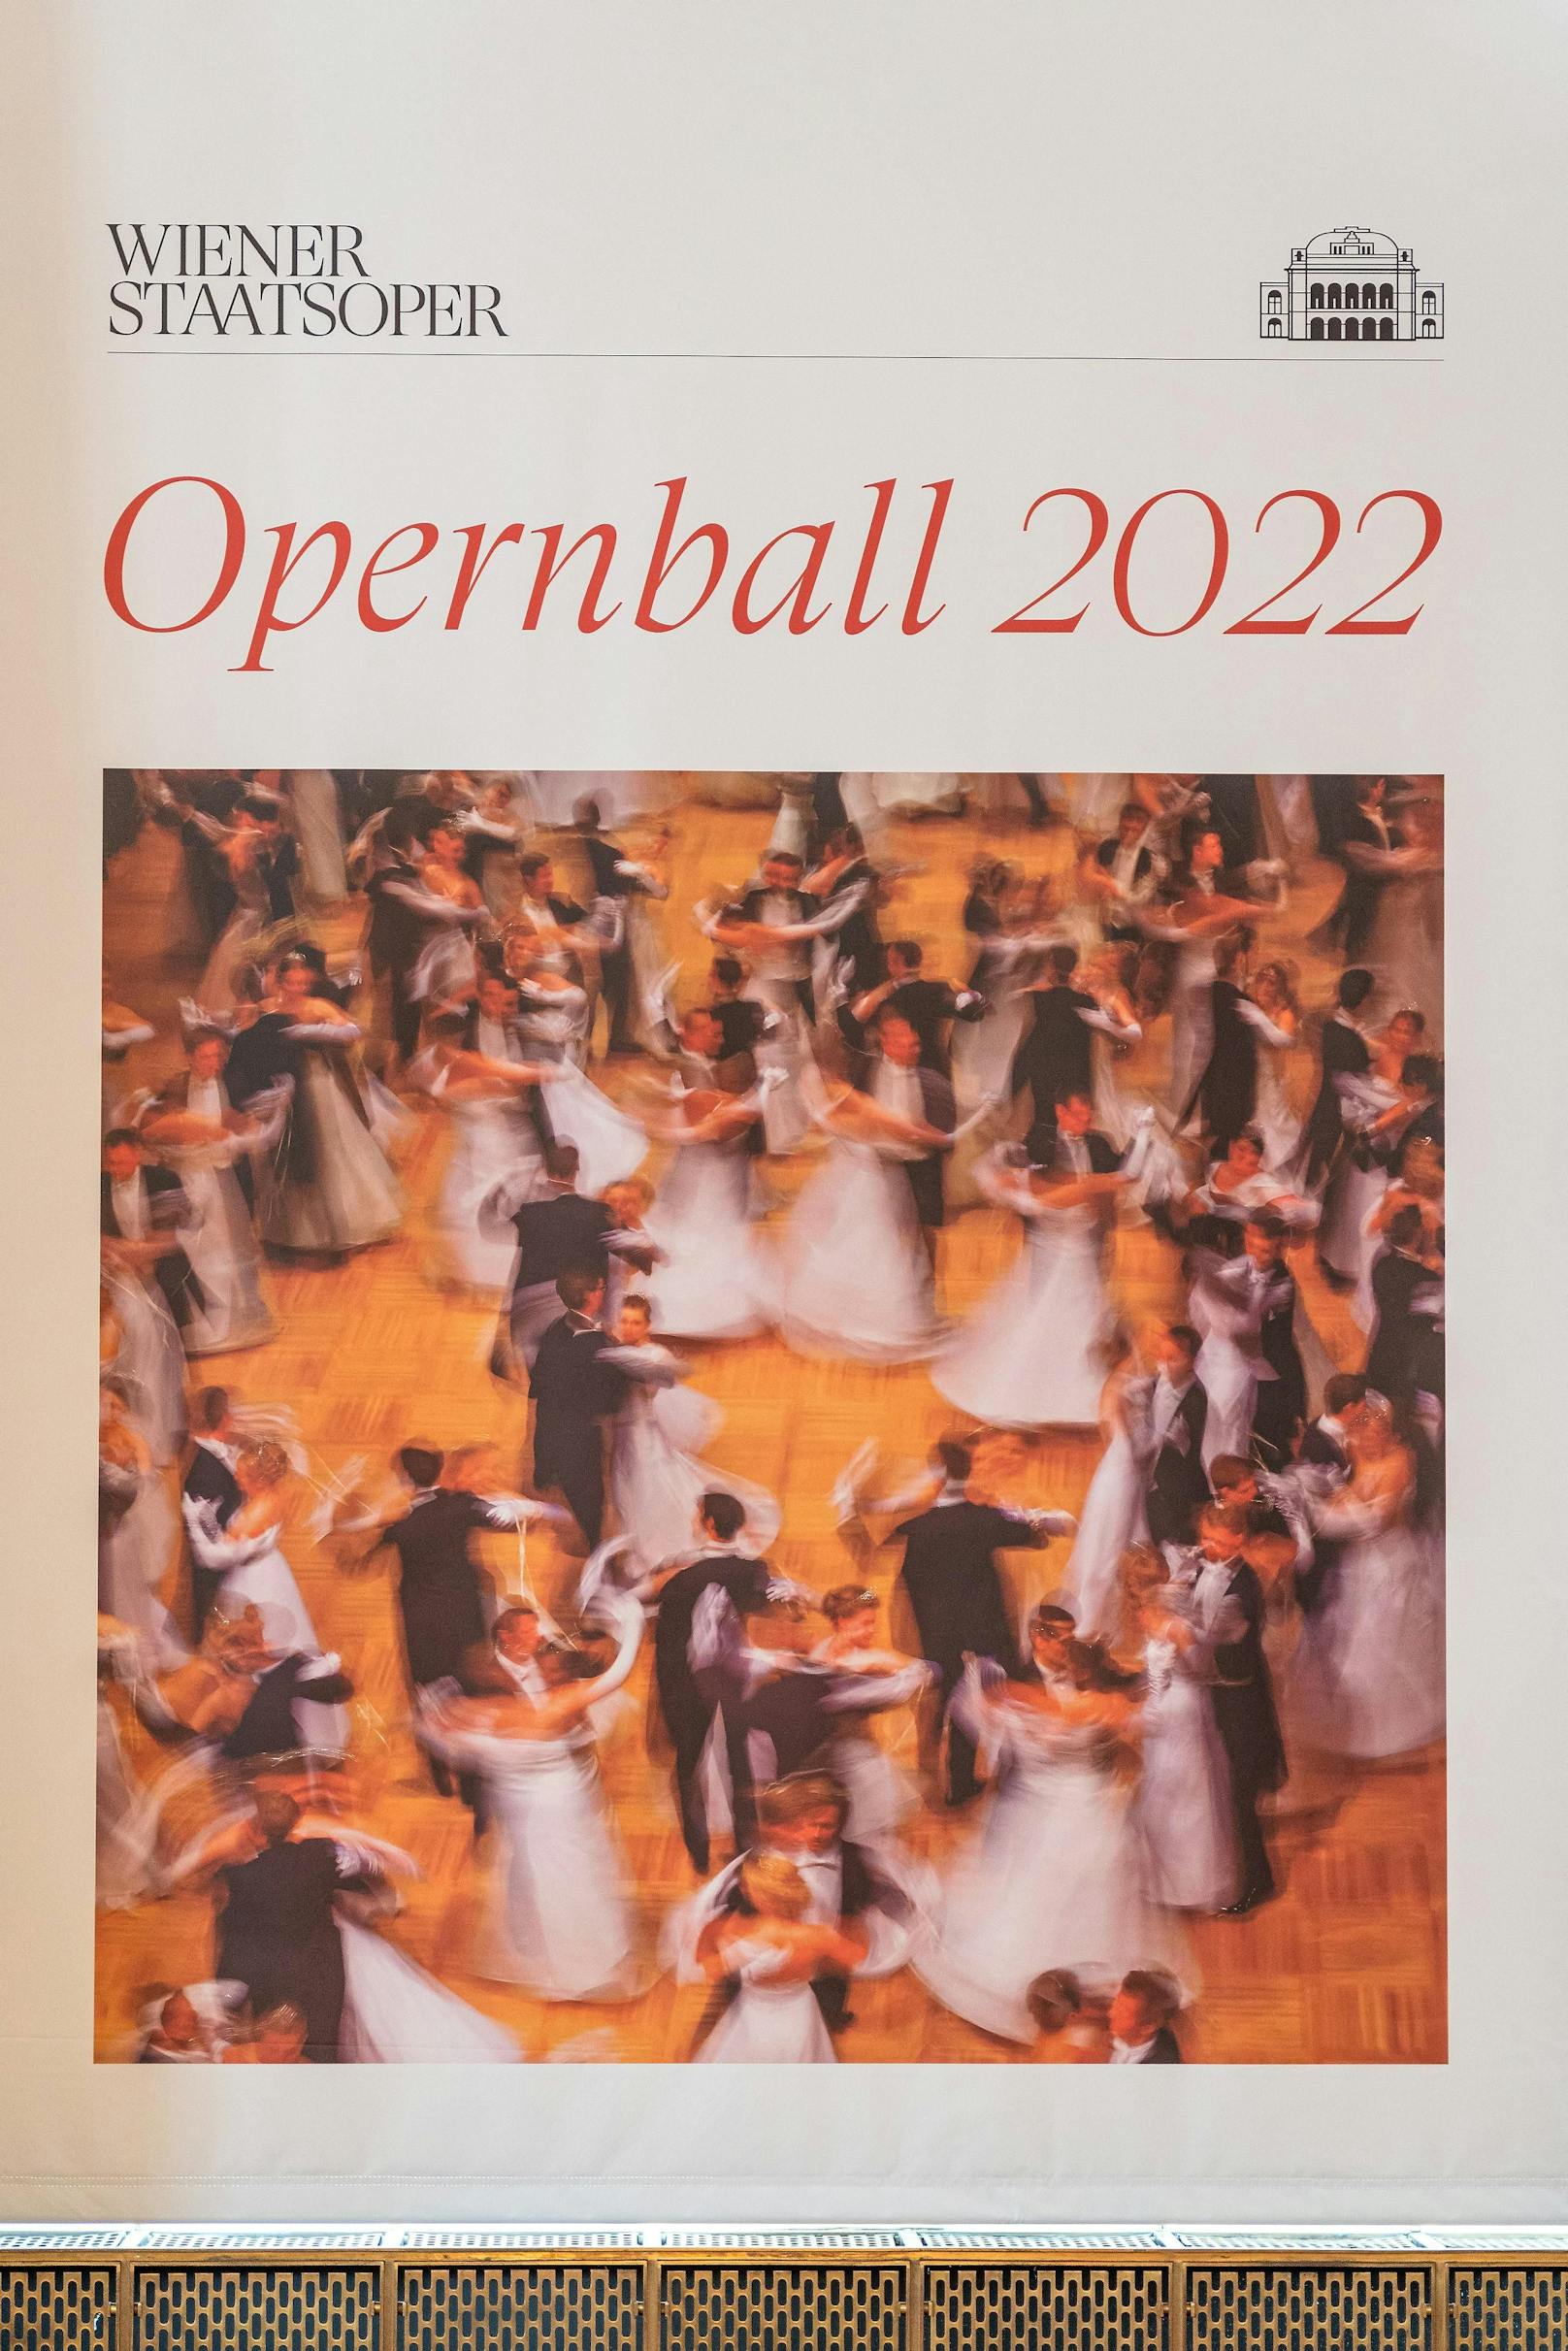 Das Vorab-Plakt zum Opernball 2022, der  nur unter strengen Auflagen stattfinden kann.